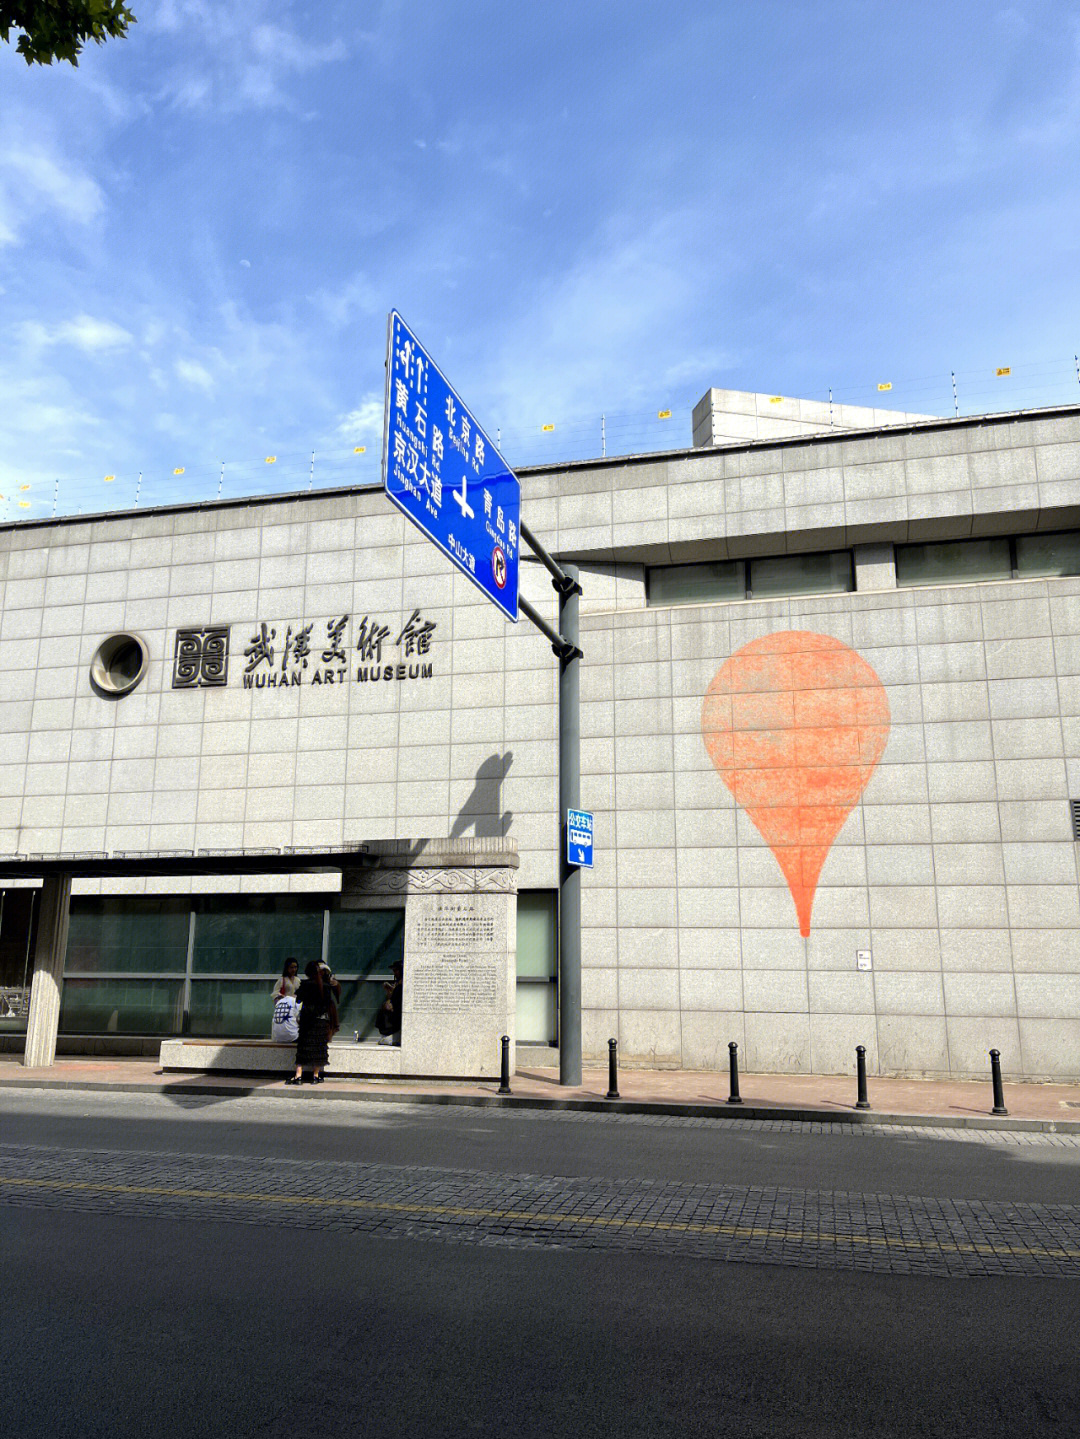 武汉美术馆  游玩,浅浅的分享一波照片吧!